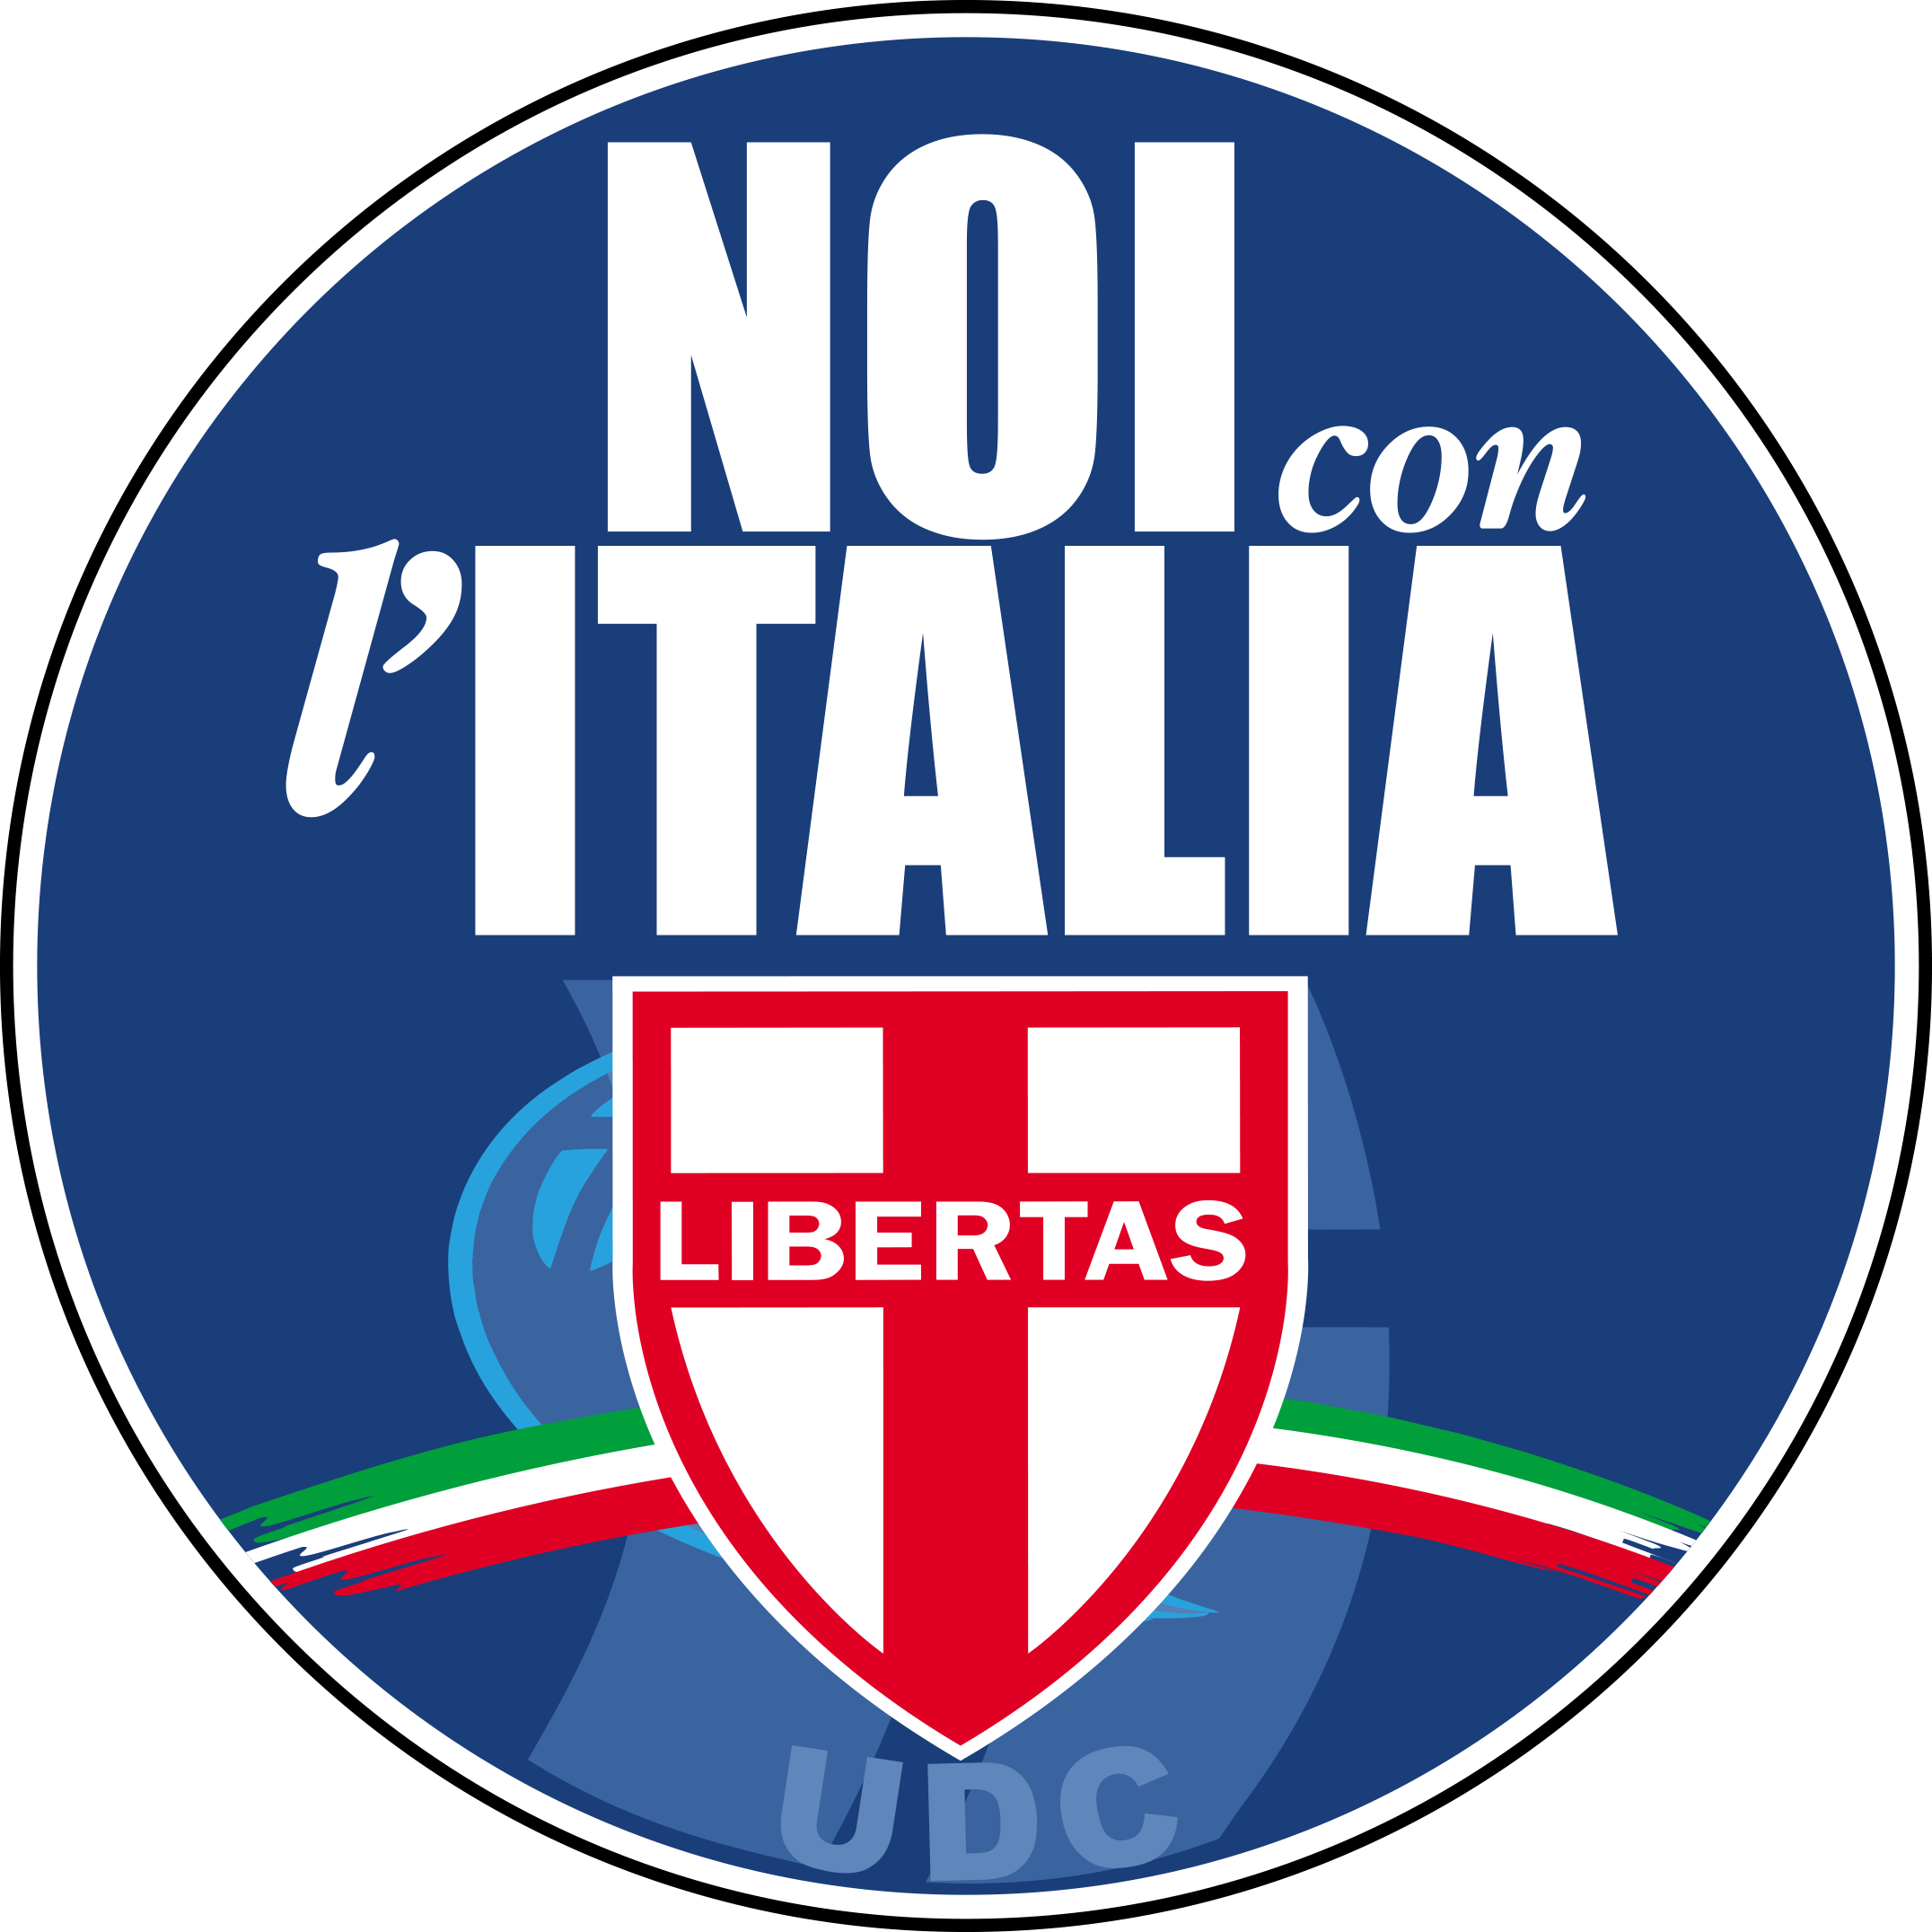  La mia lettera al Sussidiario.Net: All'Italia di oggi serve un partito di centro, non fake news.